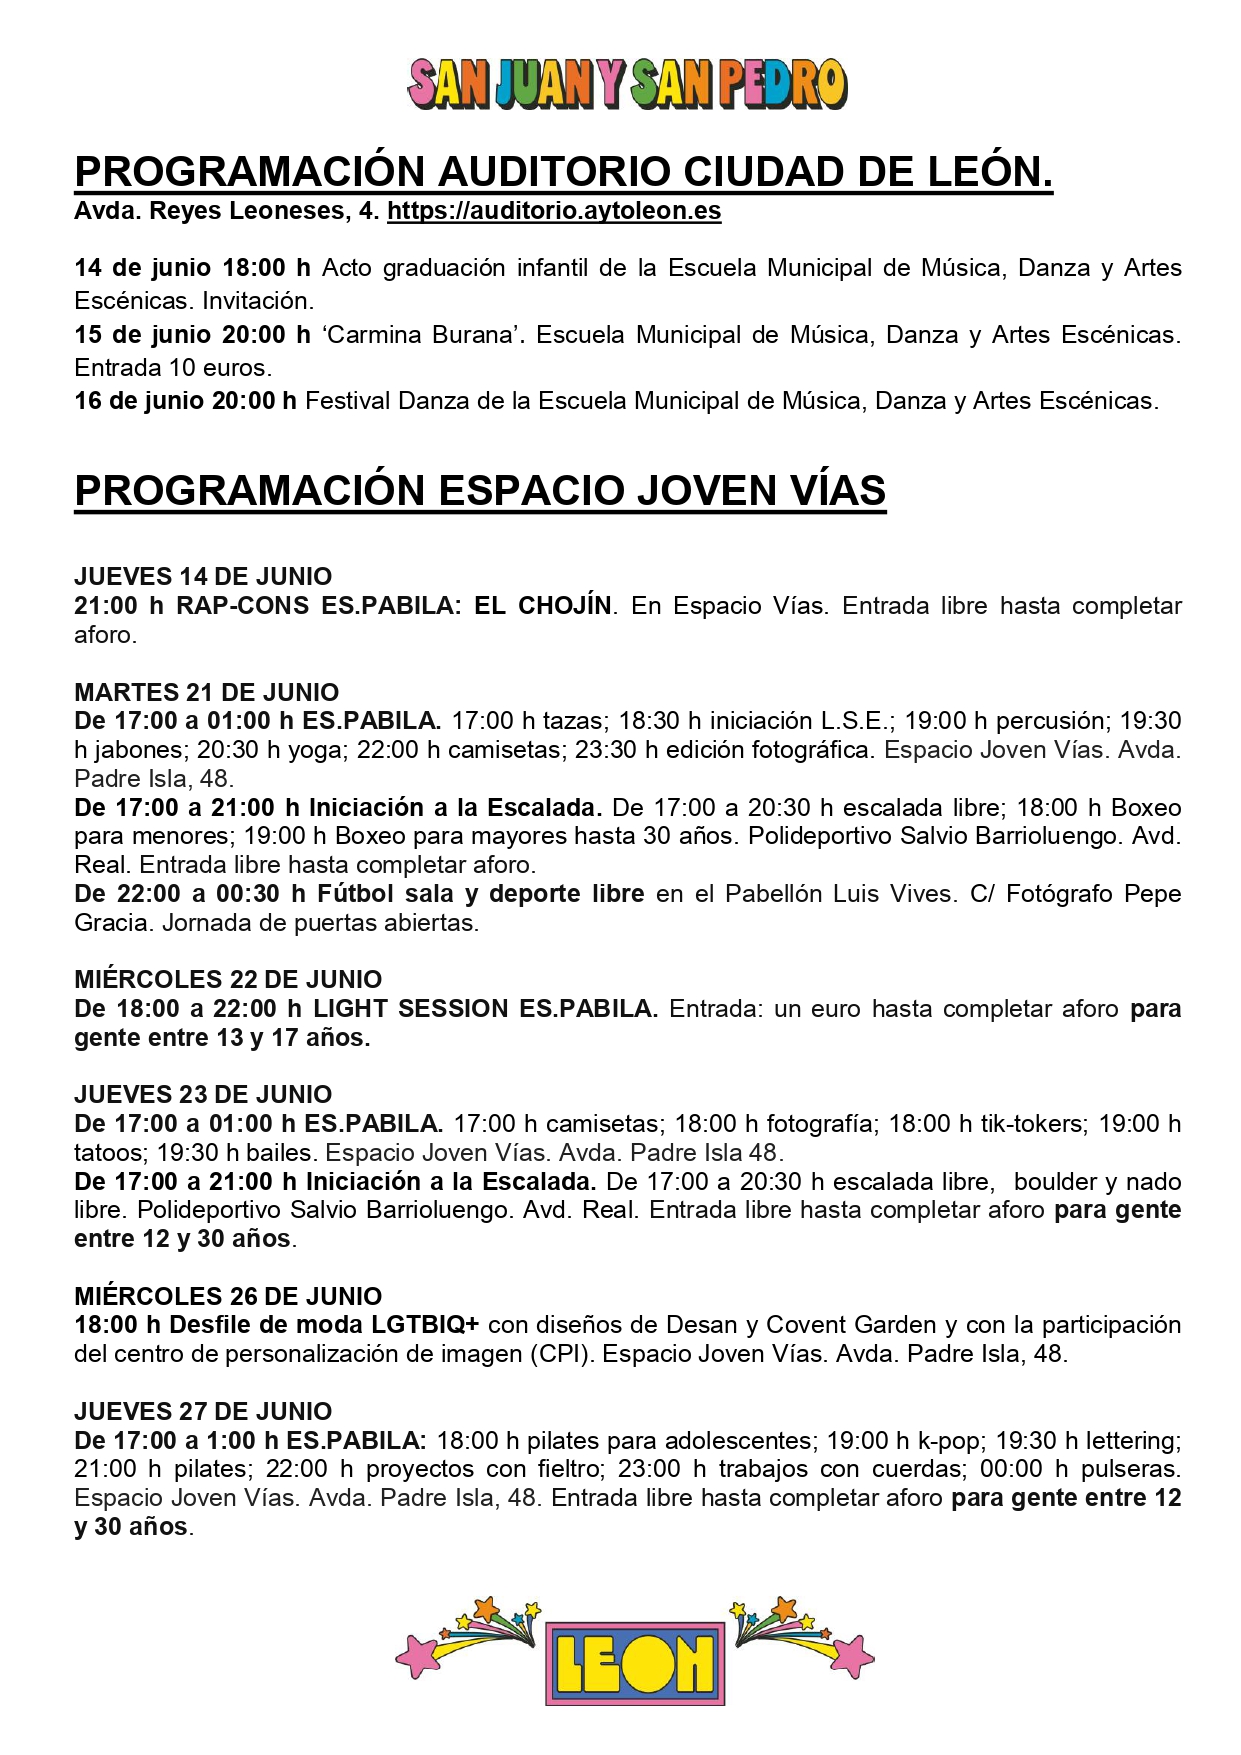 Programa de Fiestas San Juan y San Pedro en León, conciertos, deportes y todas las actividades 17